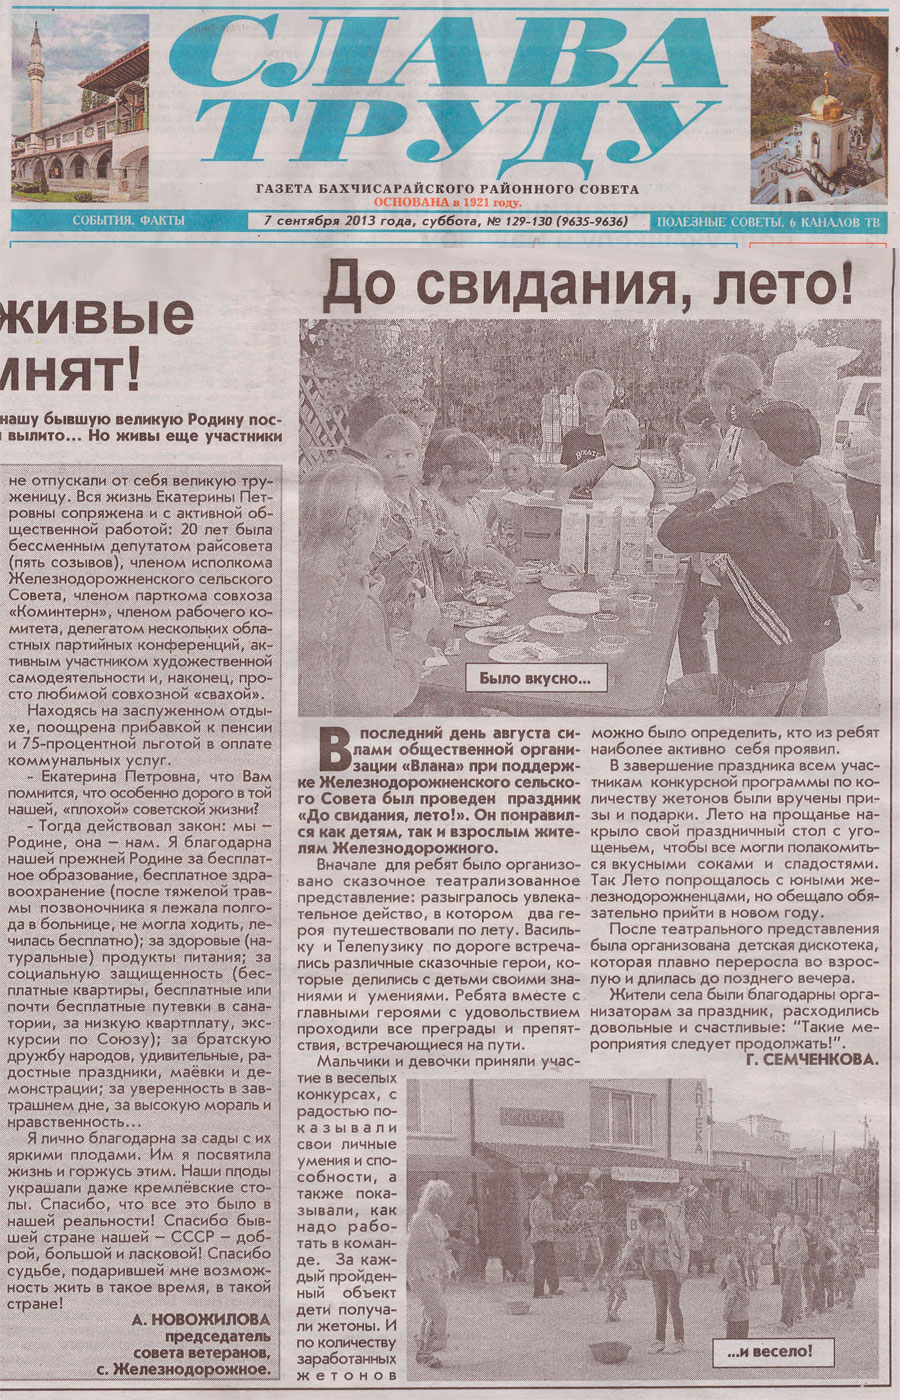 Статья в газете «Слава Труду» № 129-130 от 7 сентября 2013 года о работе общественной организации «Влана» в Крыму